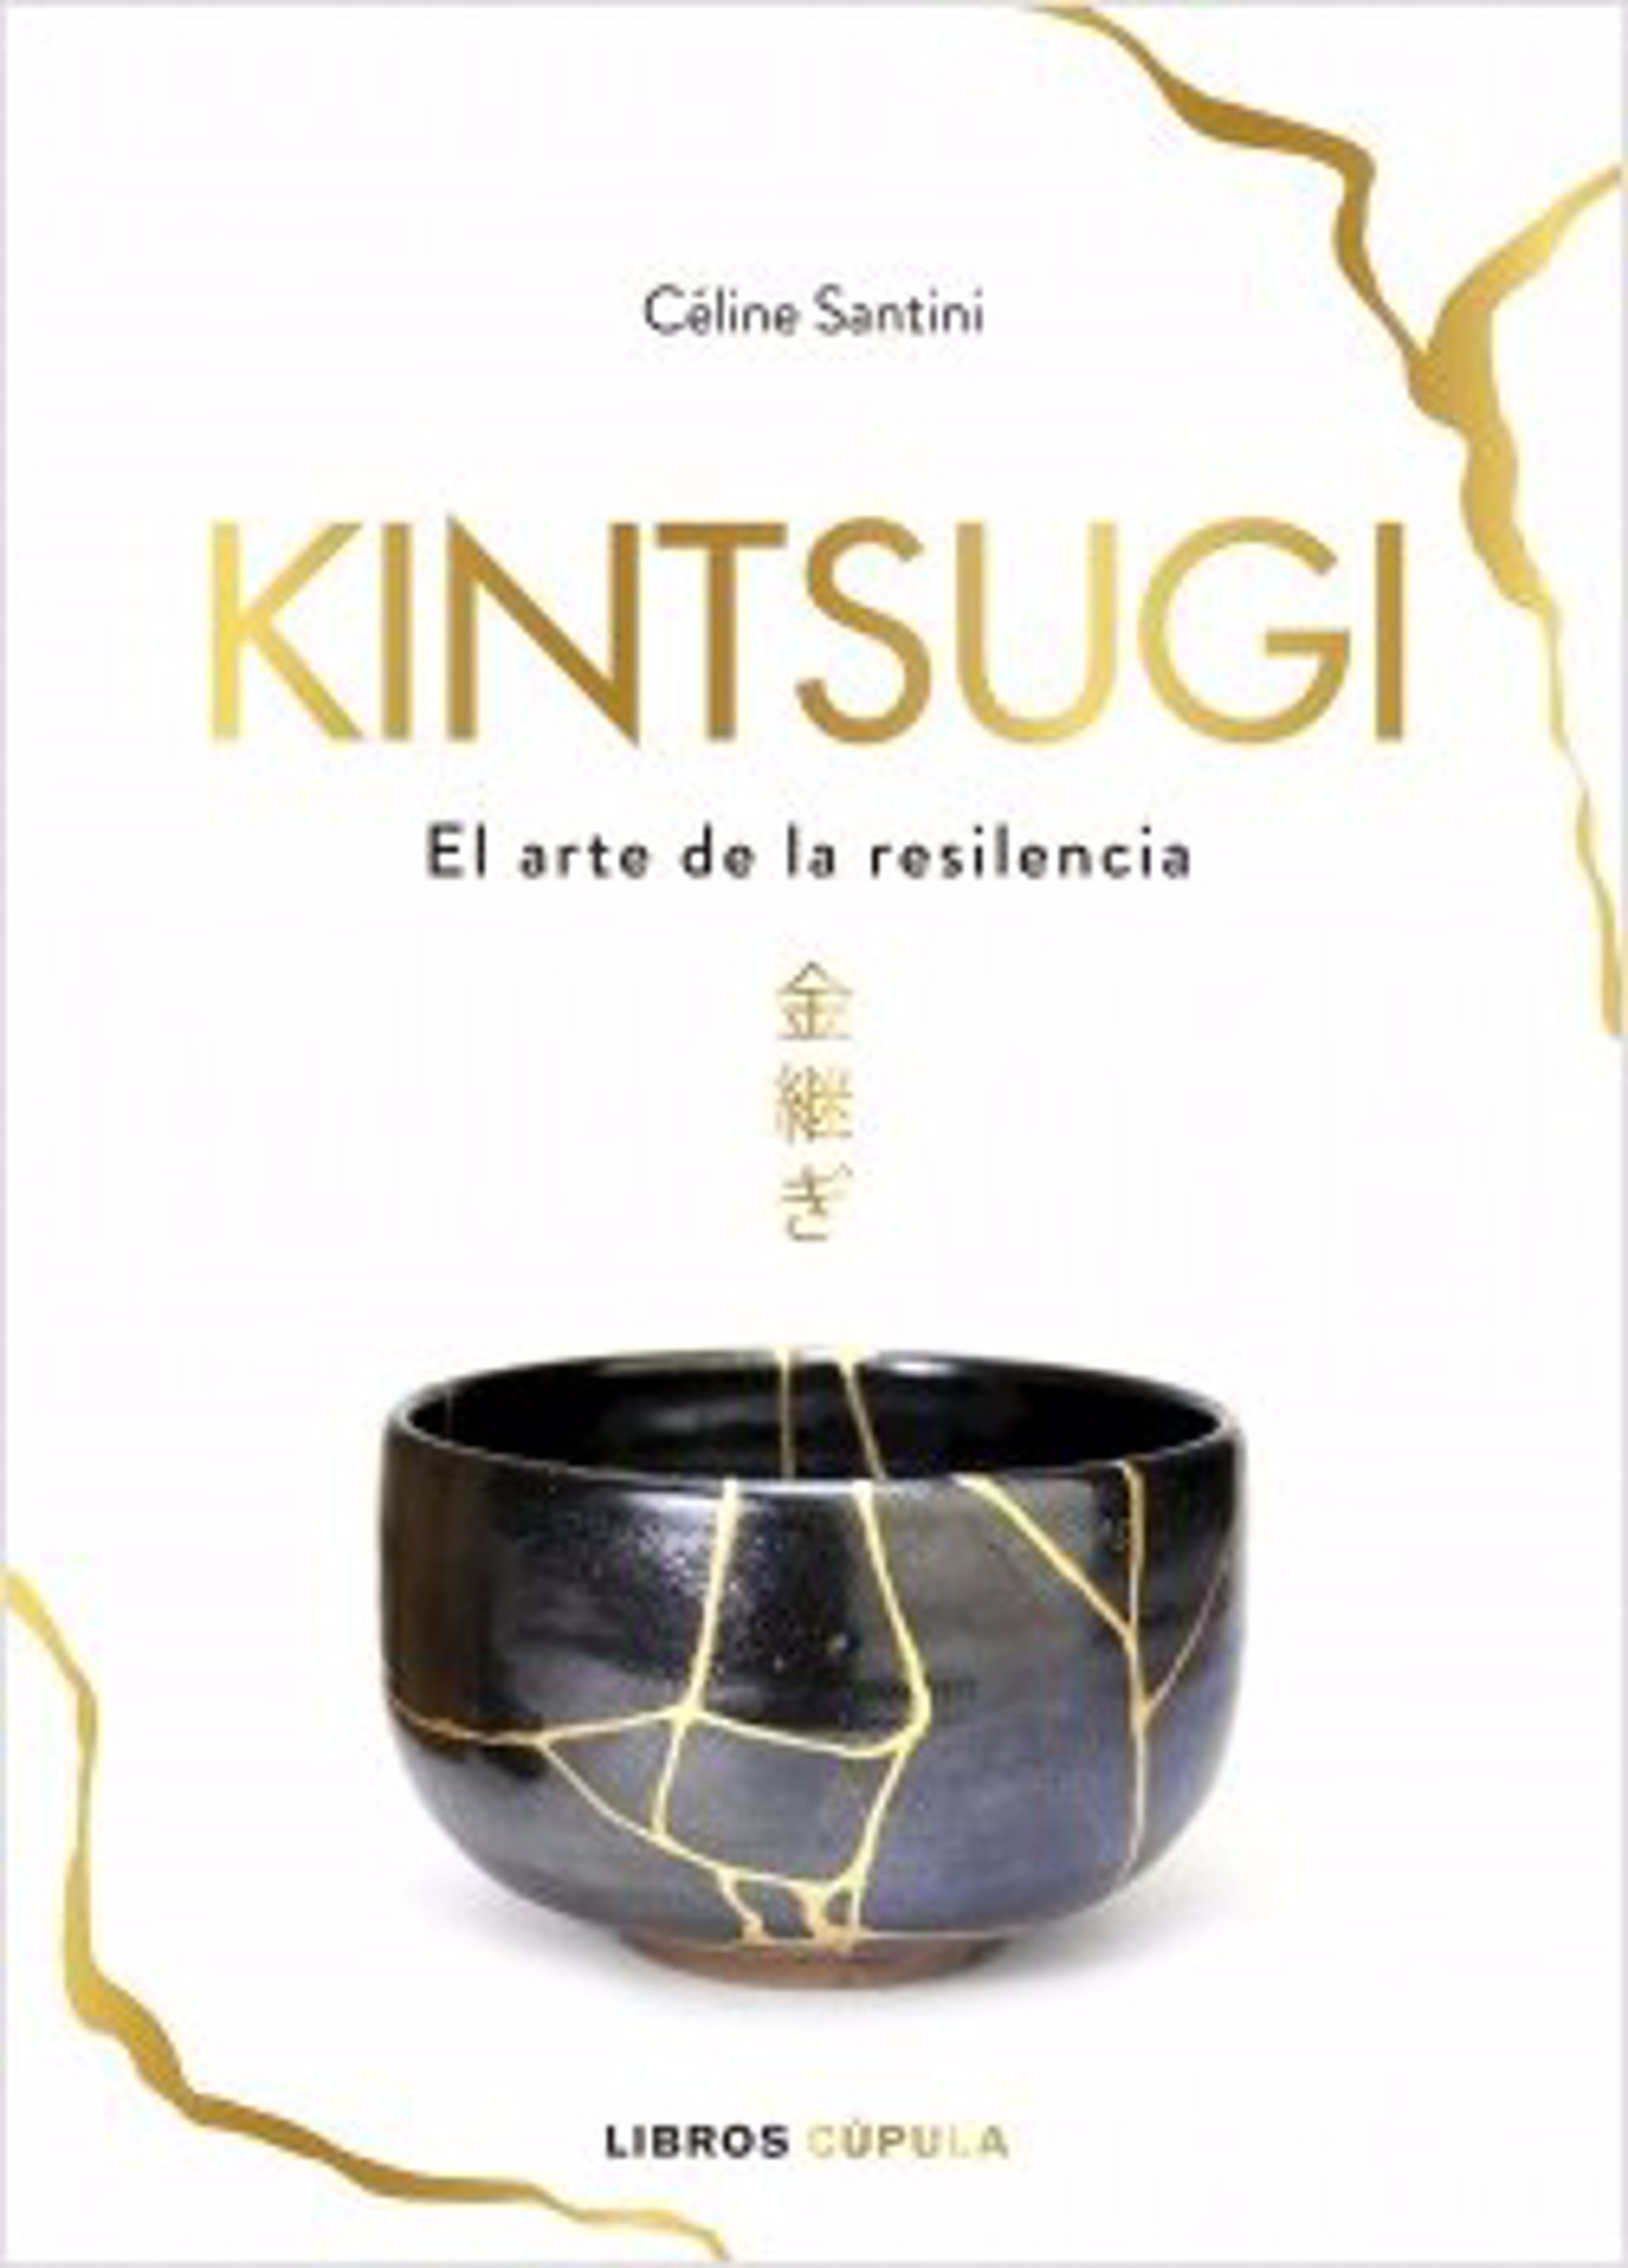 Libro sobre el arte de la resilencia: El kintsugi de Celine Santini